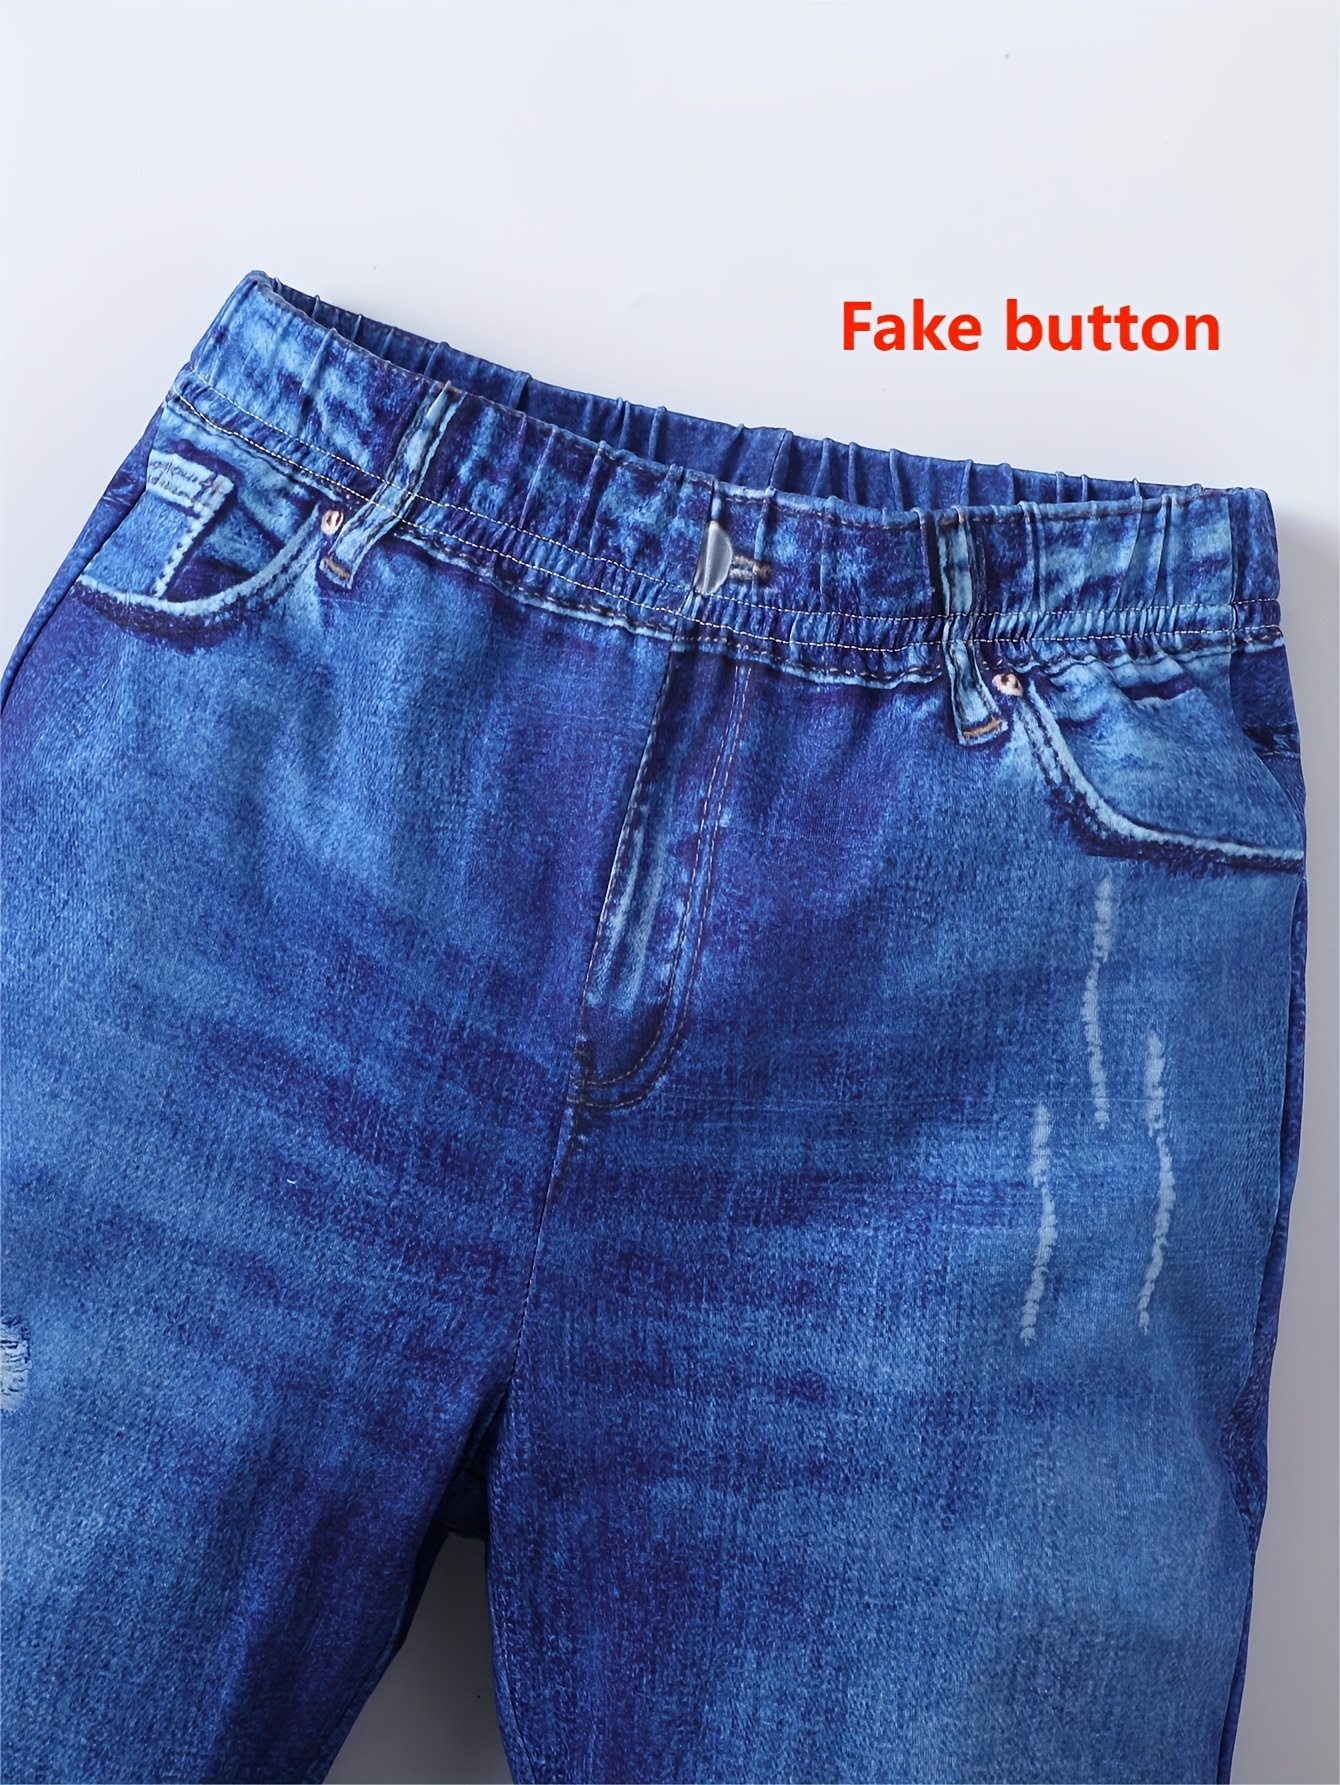 jeans corte bota para niñas